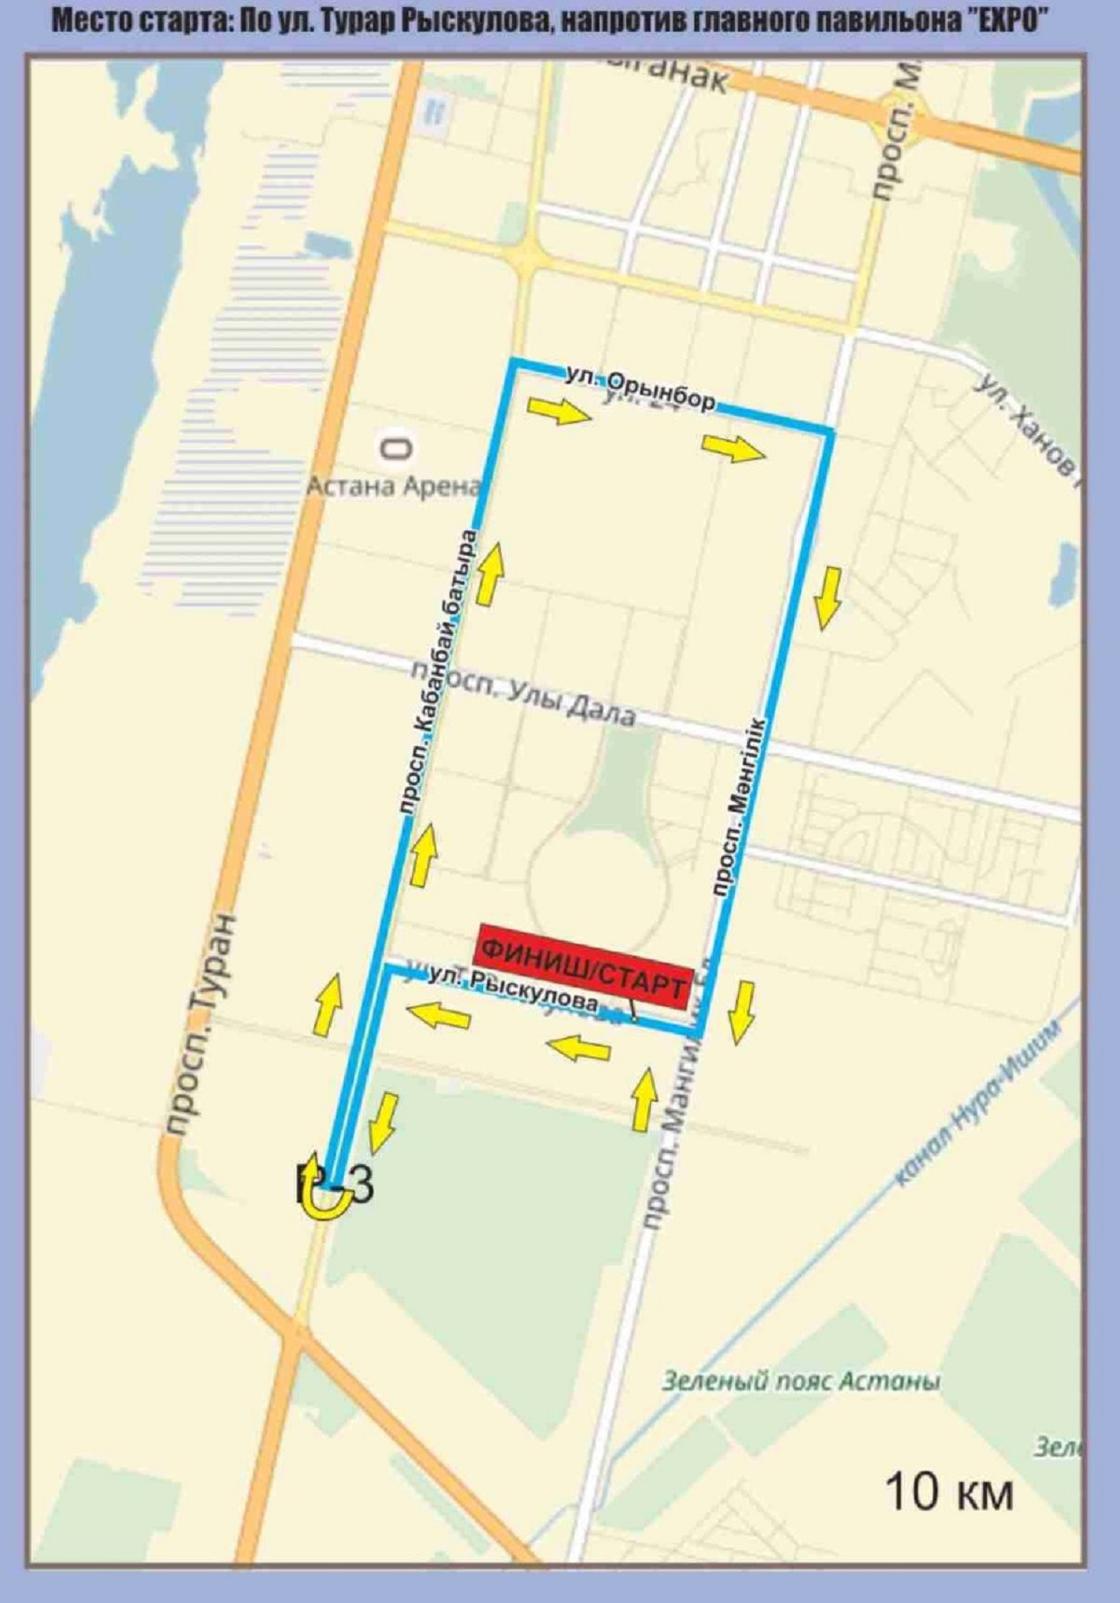 Схема маршрута марафона